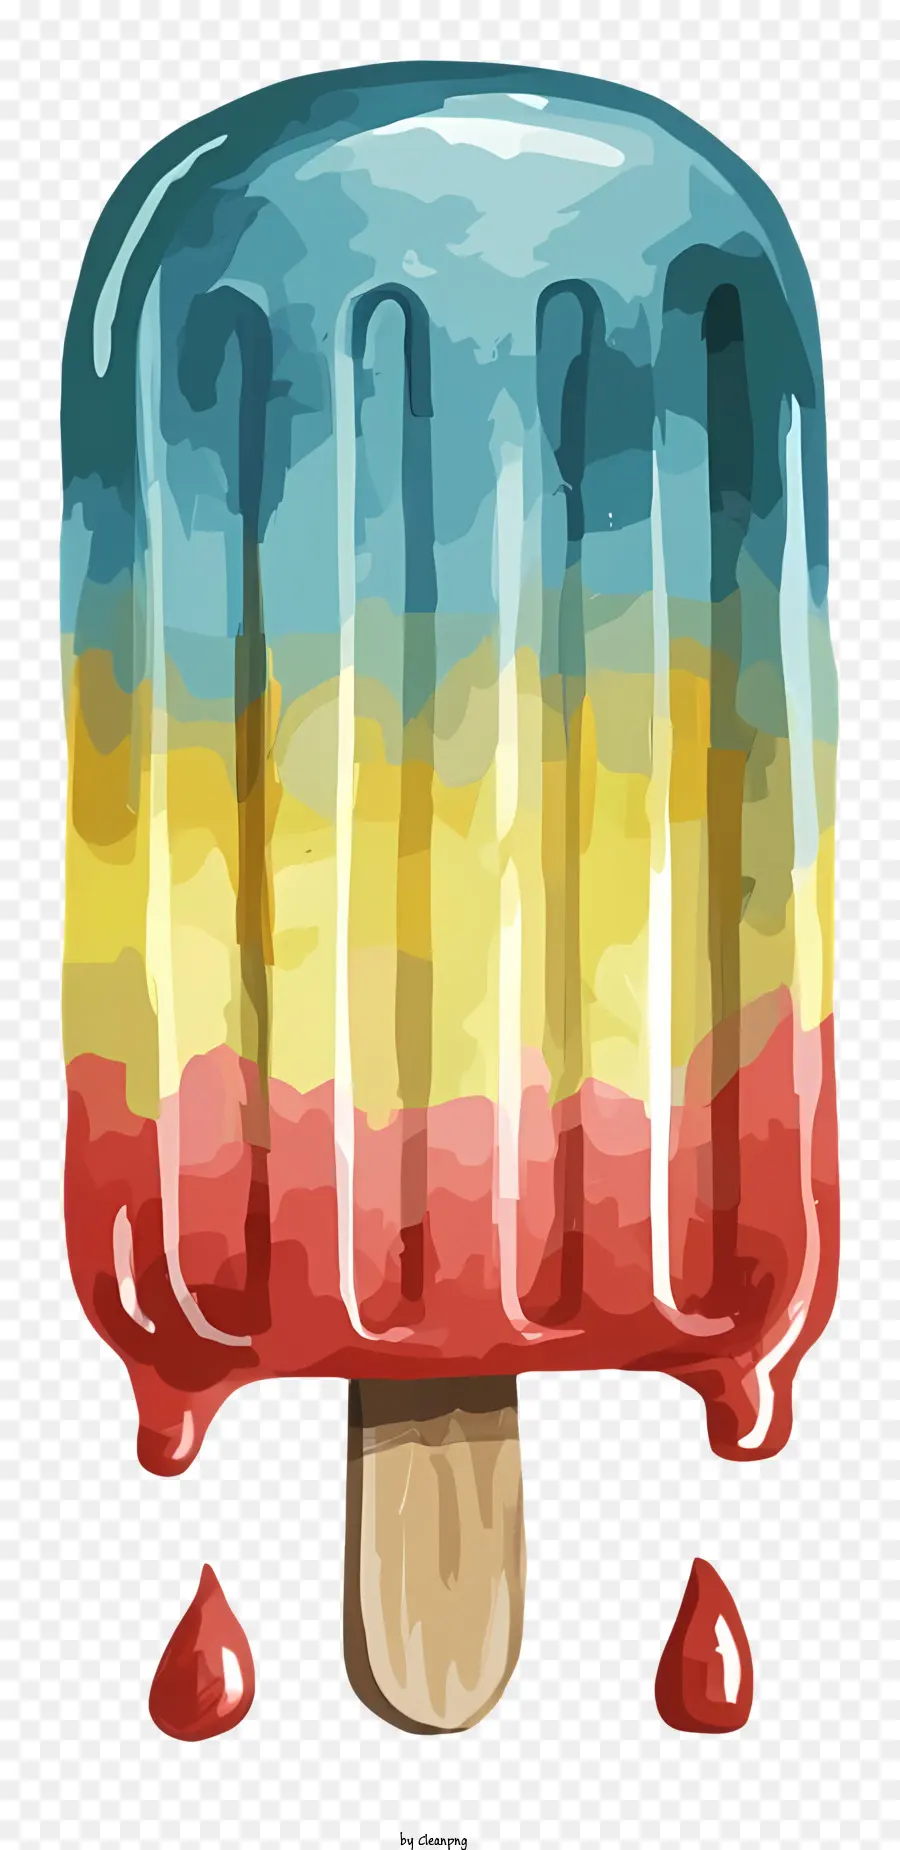 Eiskegel farbenfrohe rot blau gelbe Tropfen - Farbenfroher Eiskegel mit transparentem Kegel